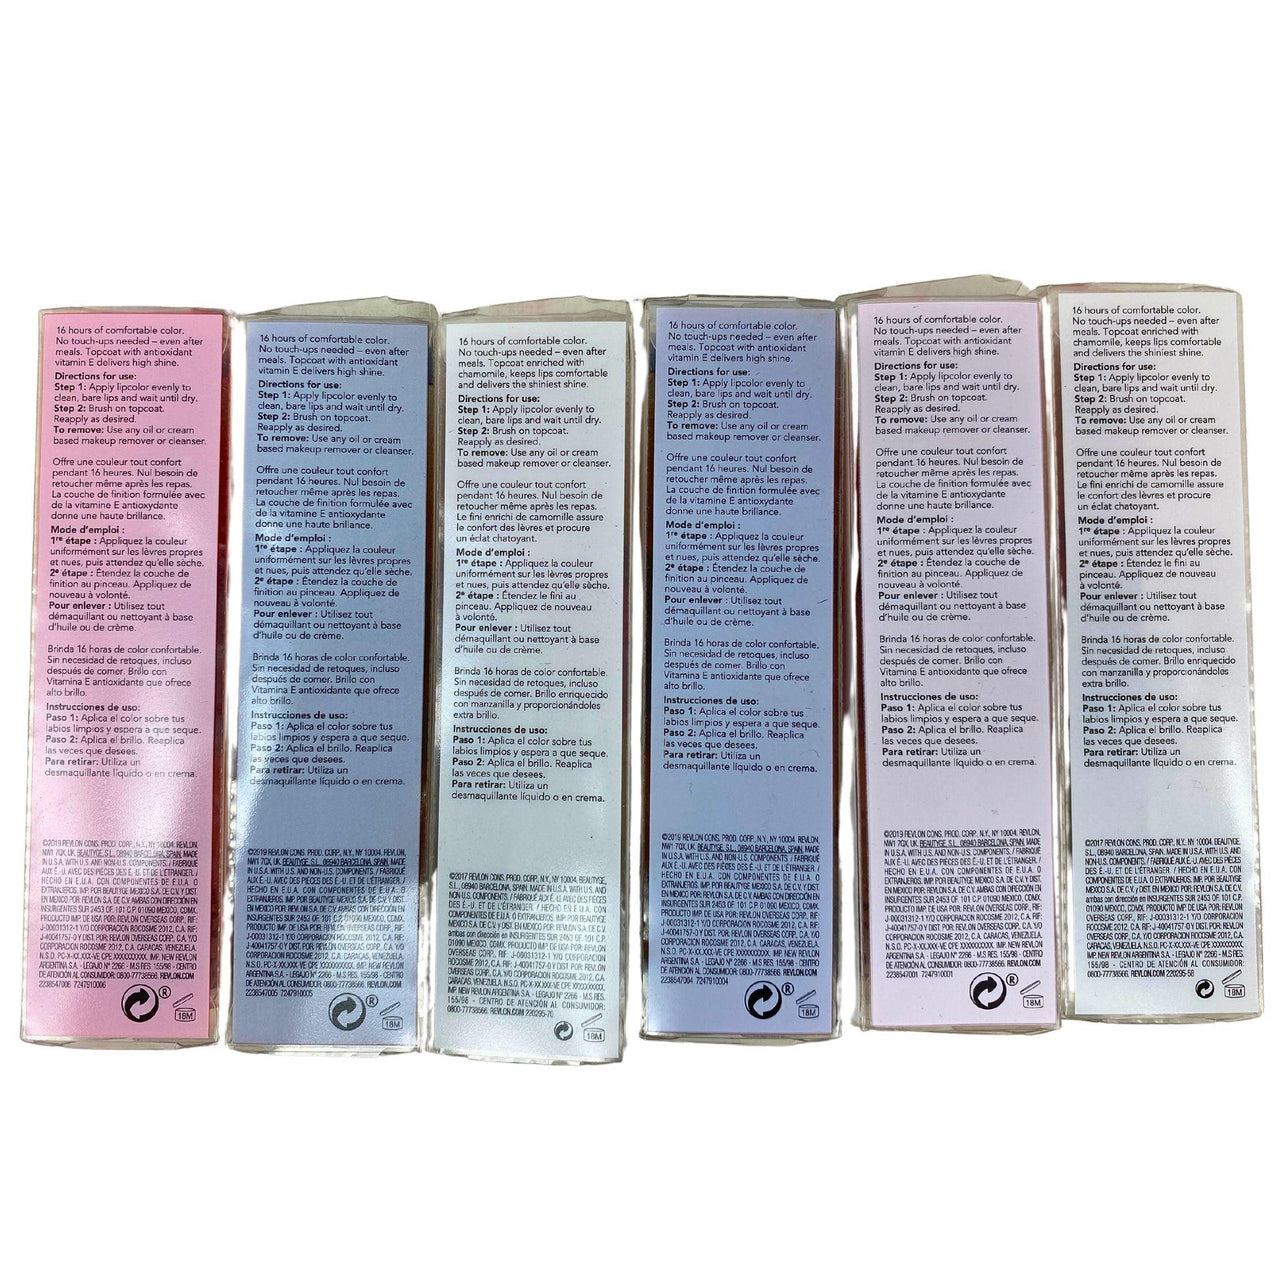 Revlon Colorstay Overtime Longwear Lipcolor Assorted Mix 0.07OZ (50 Pcs Lot) - Discount Wholesalers Inc